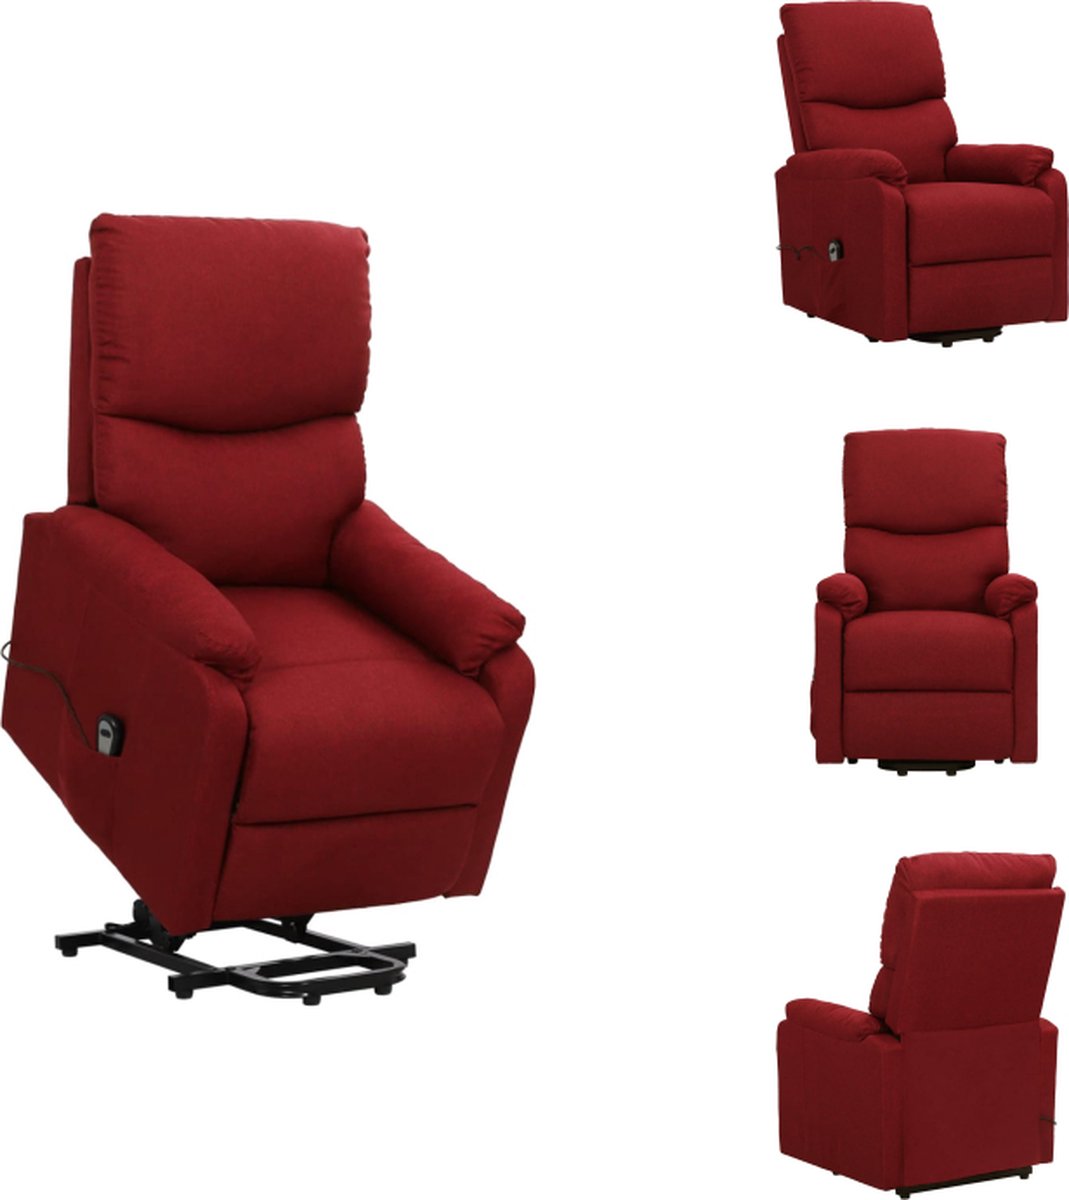 VidaXL Sta-op-stoel Relaxfauteuil Elektronisch Verstelbaar Duurzaam en Stabiel Geschikt voor Ouderen en mensen met Rugklachten Wijnrood Afmetingen 67 x 88.5 x 106.5 cm (B x D x H) Fauteuil